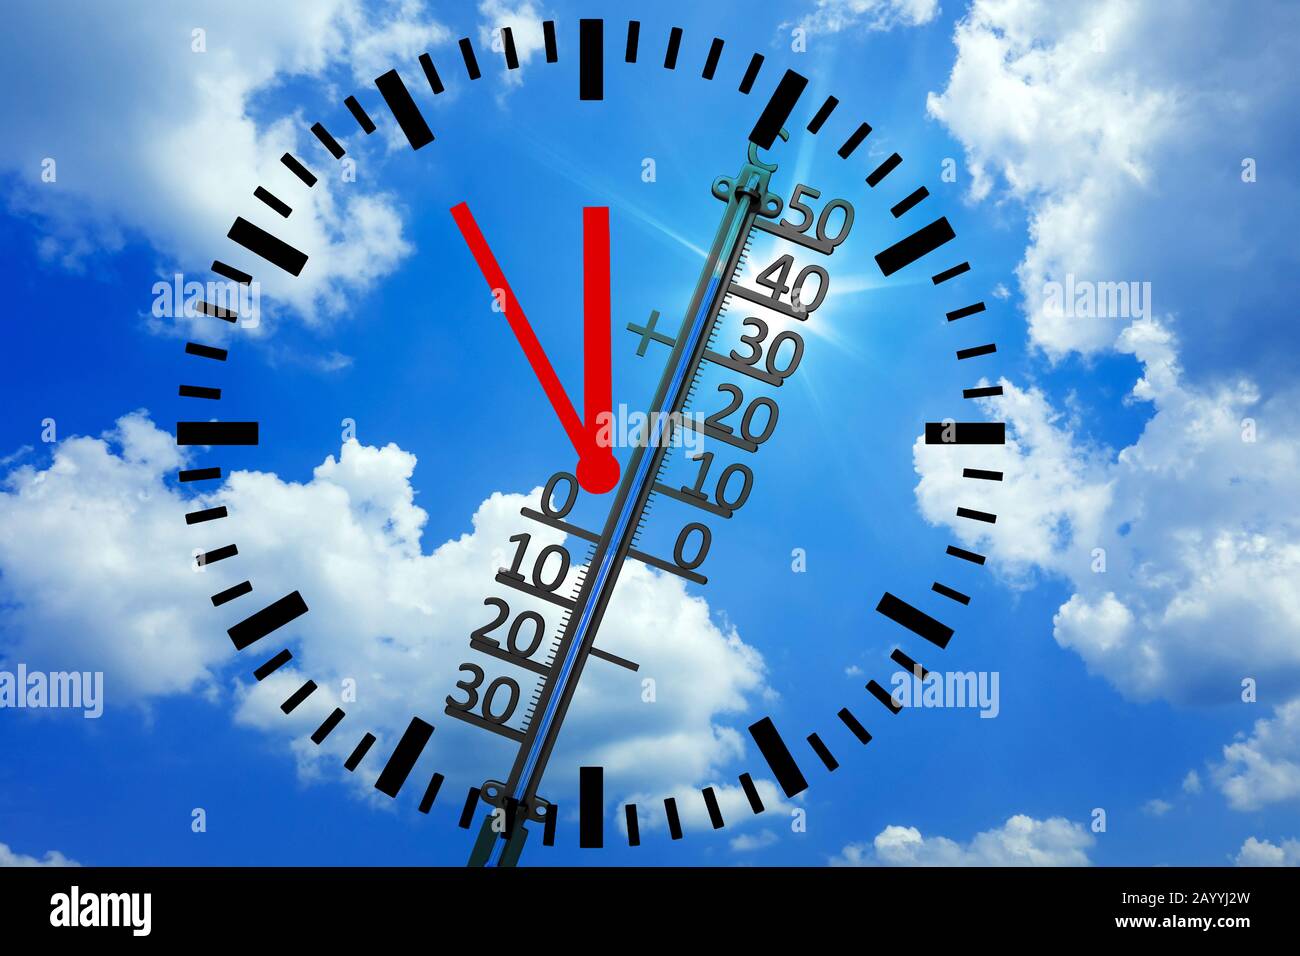 Le thermomètre mesure la température extrême de la chaleur, le changement climatique, l'horloge affichant 5 pour 12, composition, Allemagne Banque D'Images